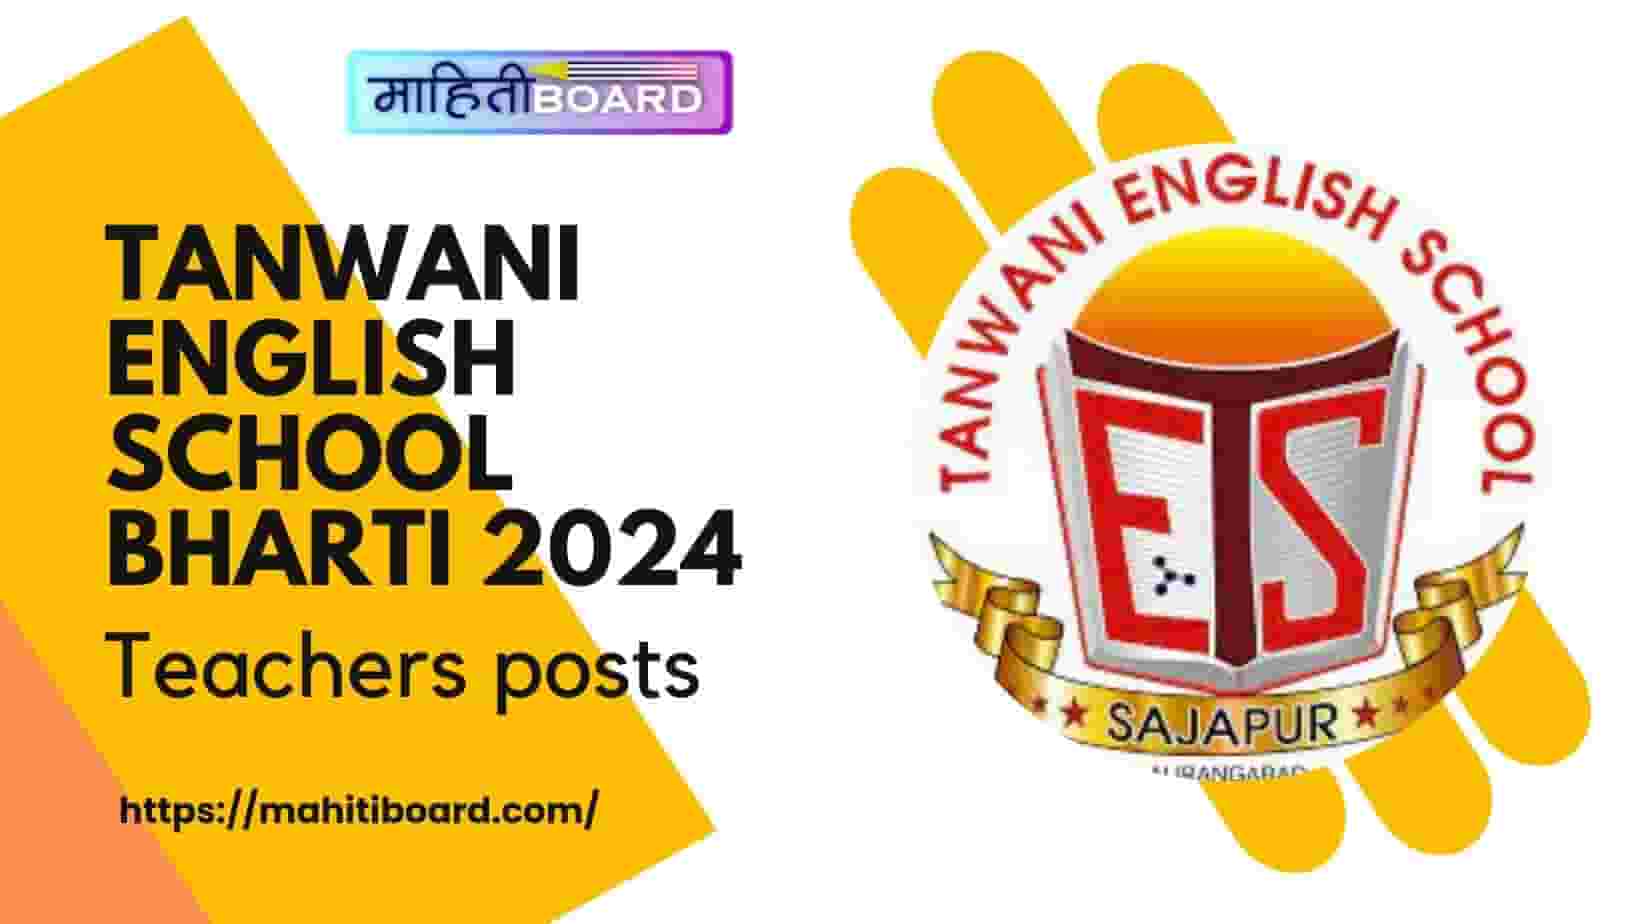 Tanwani English School Bharti 2024